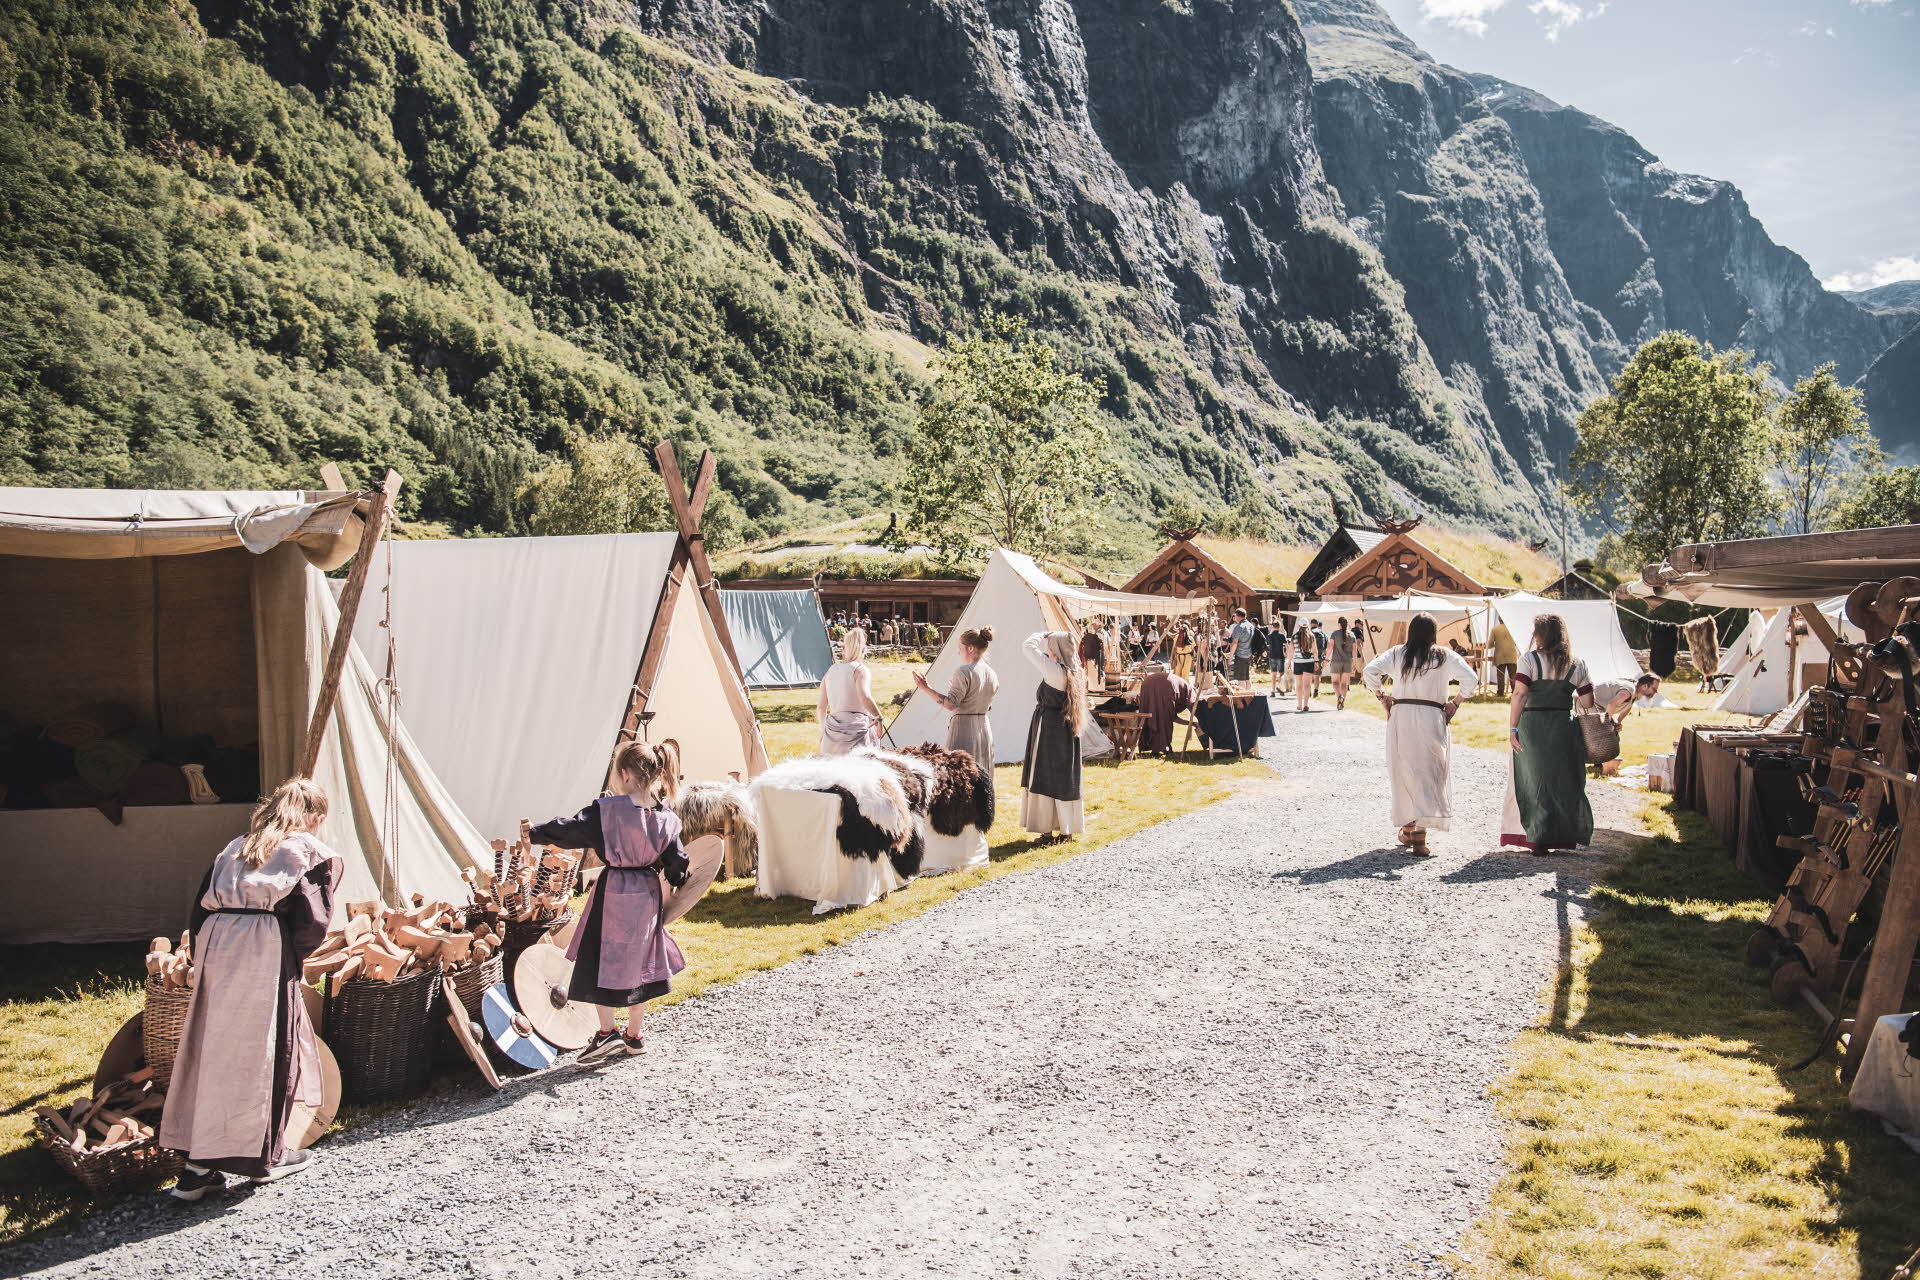 居德旺恩 (Gudvangen) 的人们身着维京服饰，在帐篷外展示手工制作的产品